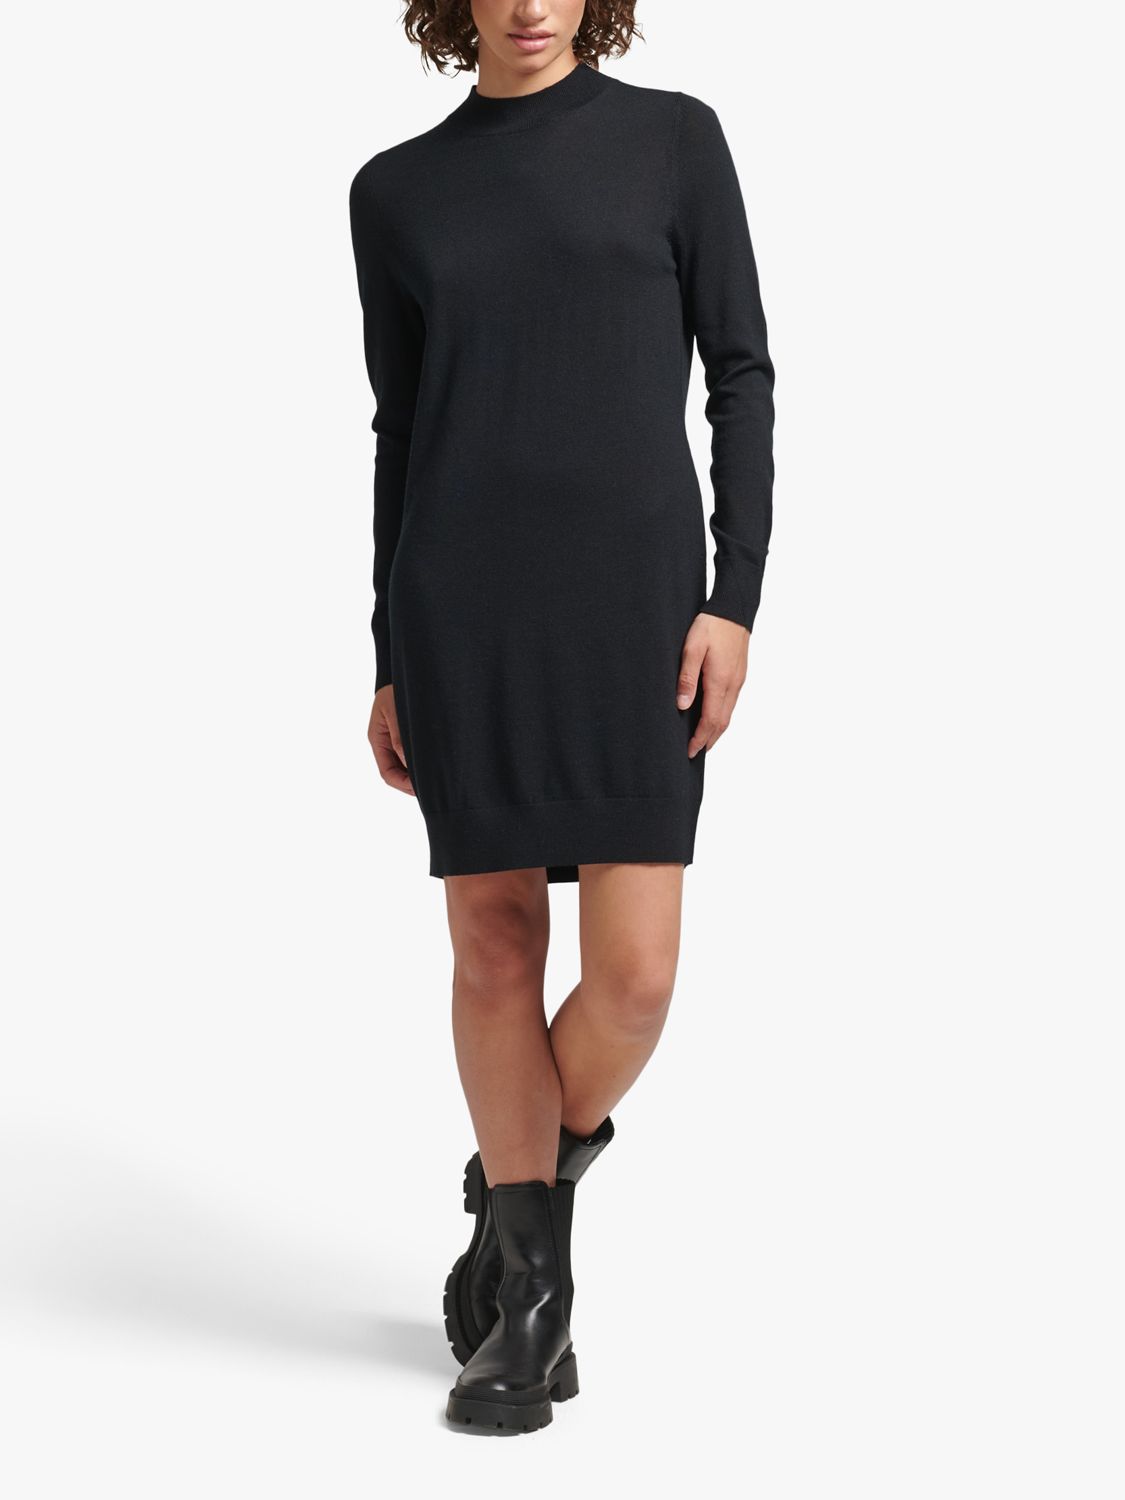 Buy Superdry Merino Wool Long Sleeve Mini Dress Online at johnlewis.com